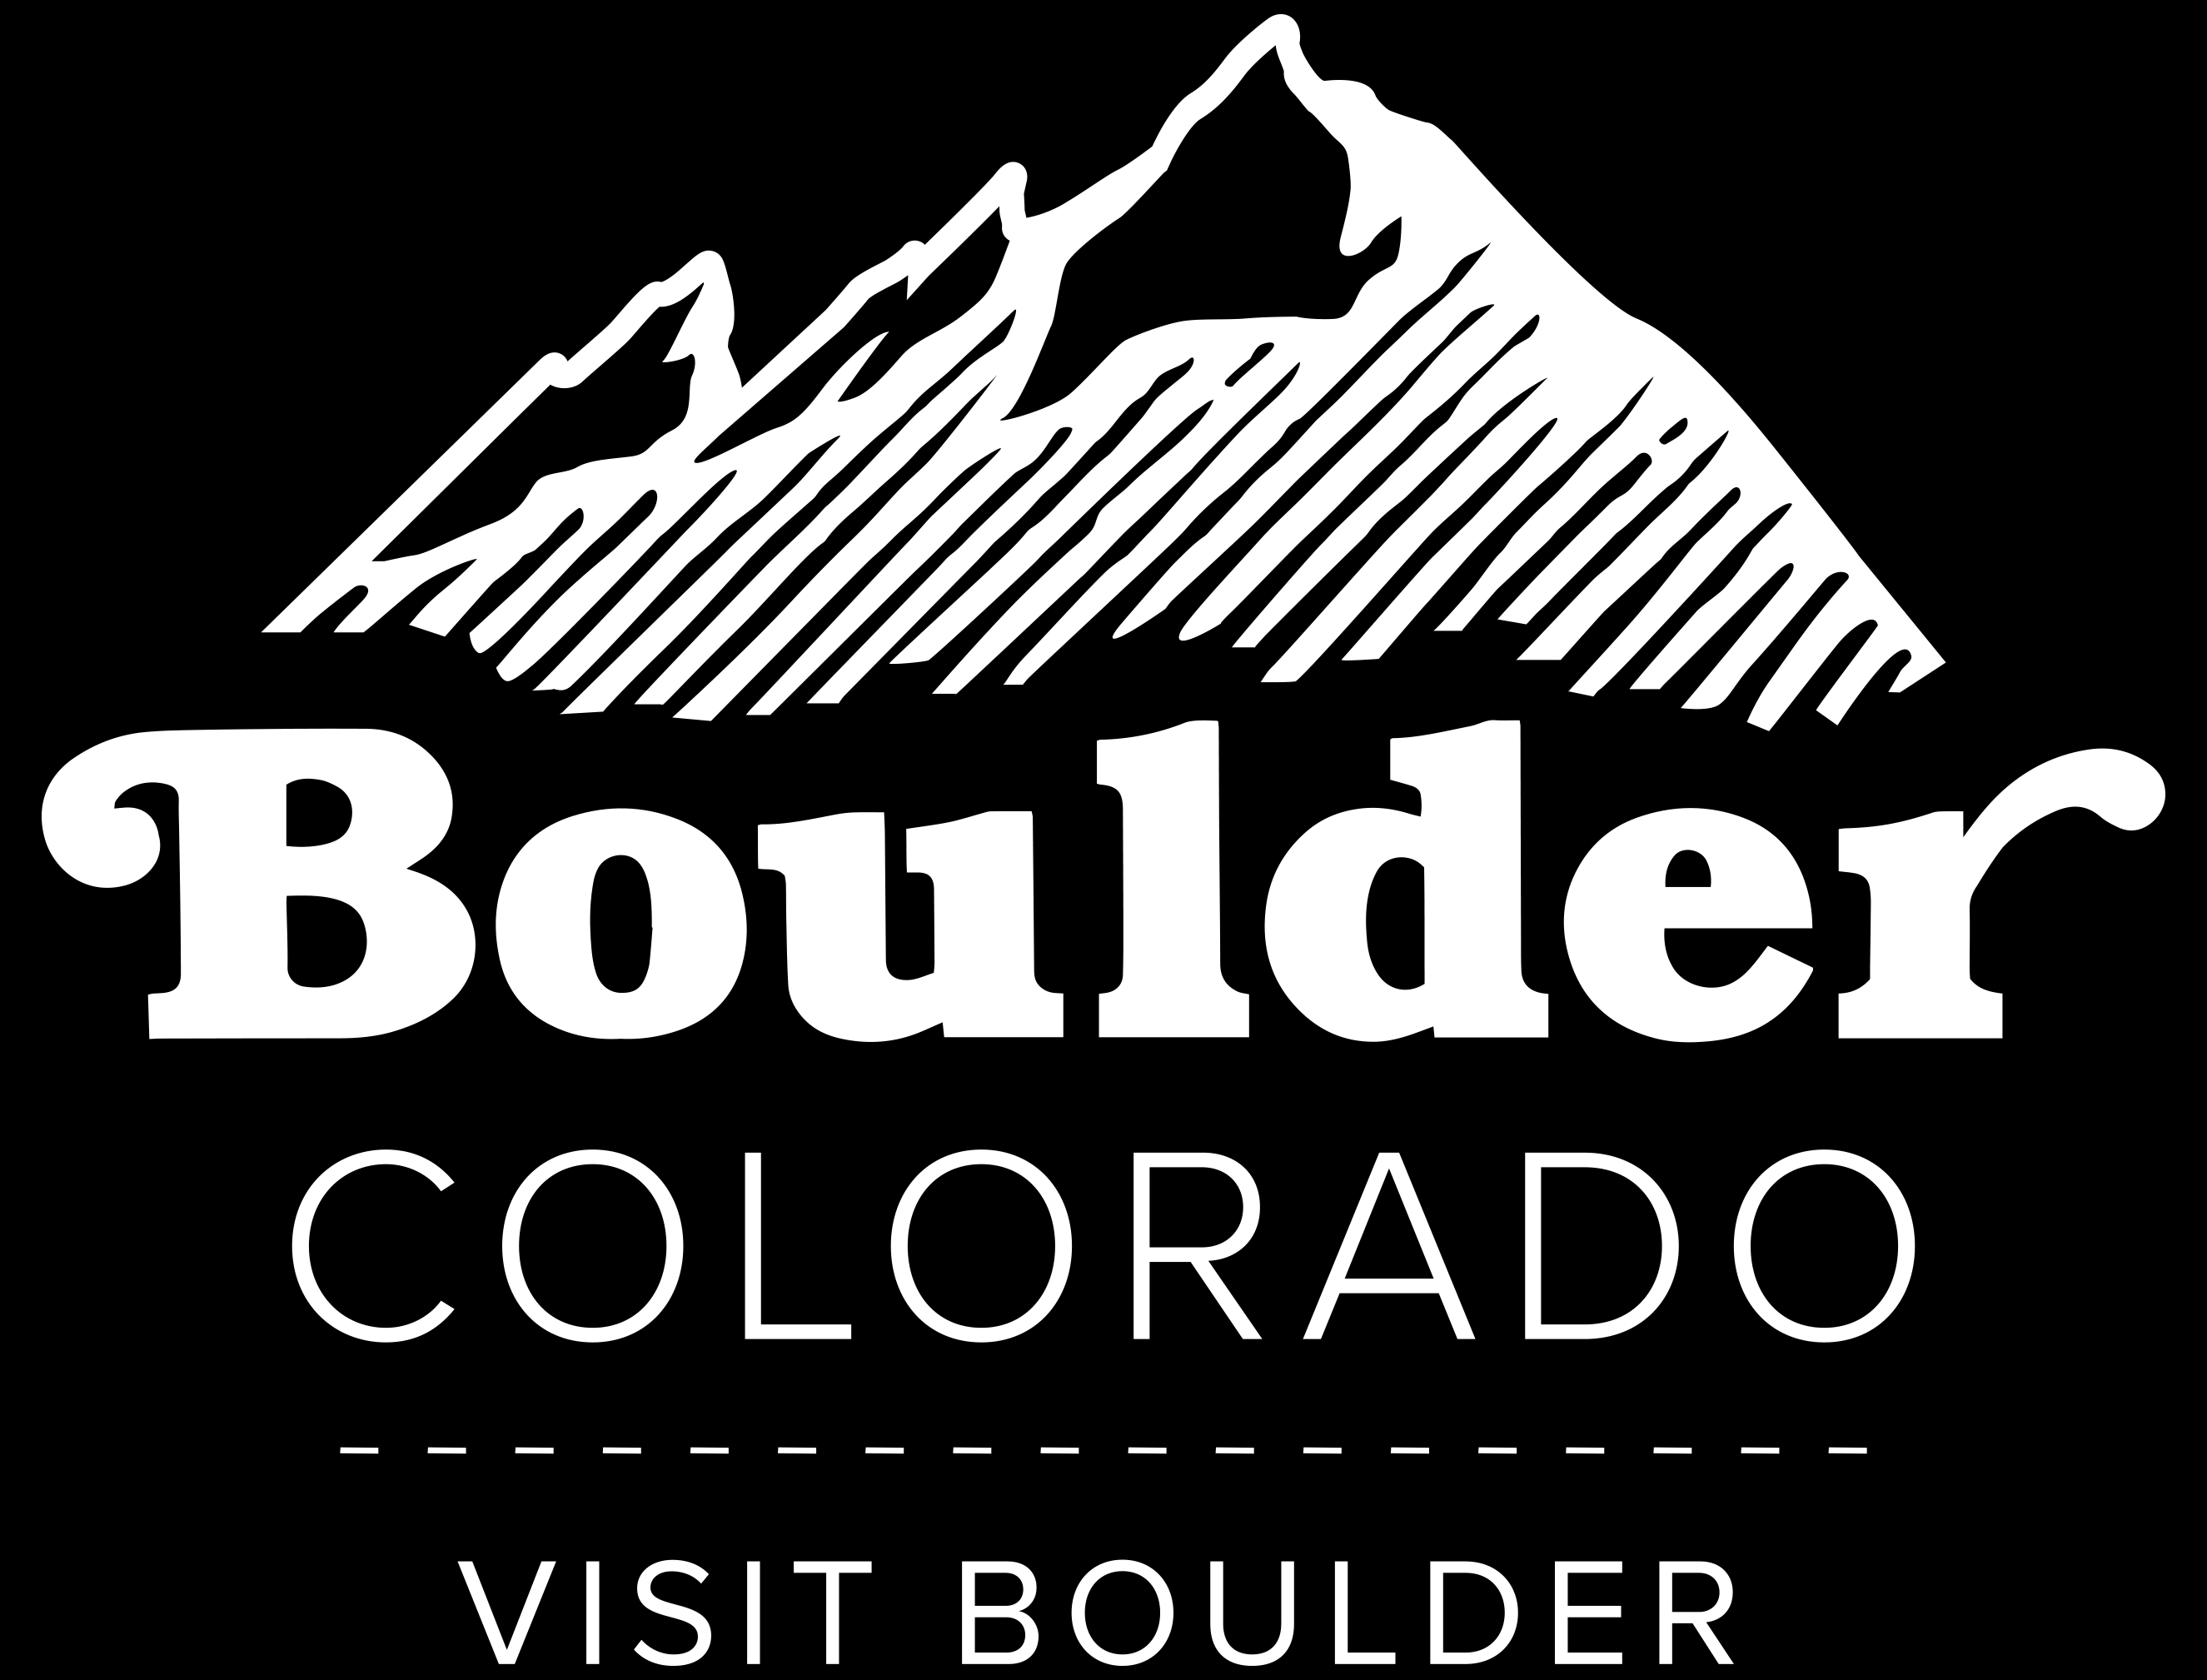 Visit Boulder logo - Links to website